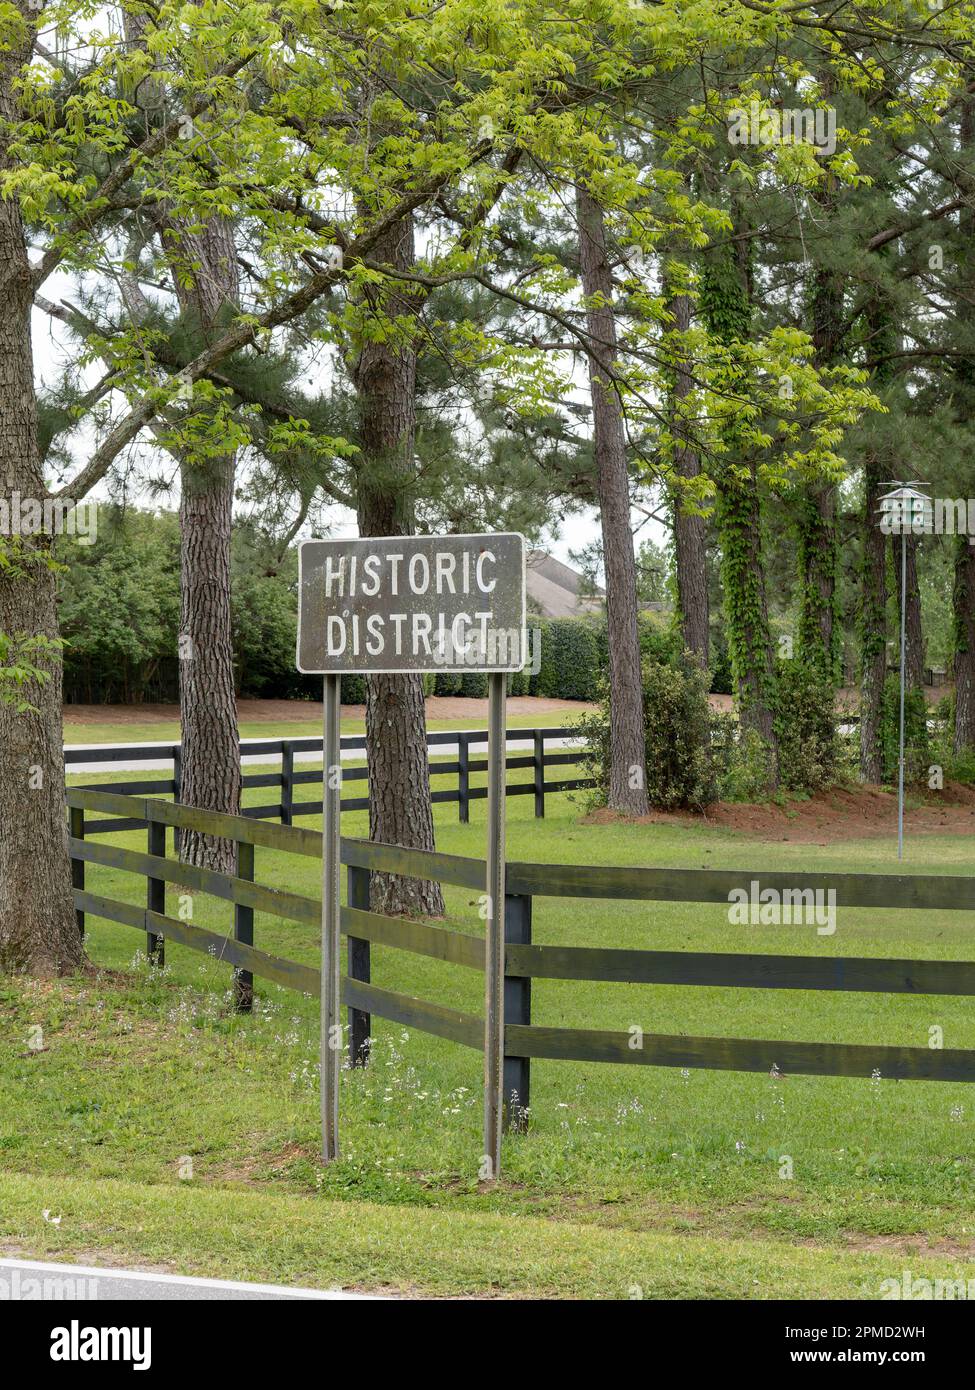 Historischer Bezirk in der Gegend steht für eine historische Gegend einer ländlichen Gemeinde mit bekannter Geschichte in der Pike Road, Alabama, USA. Stockfoto